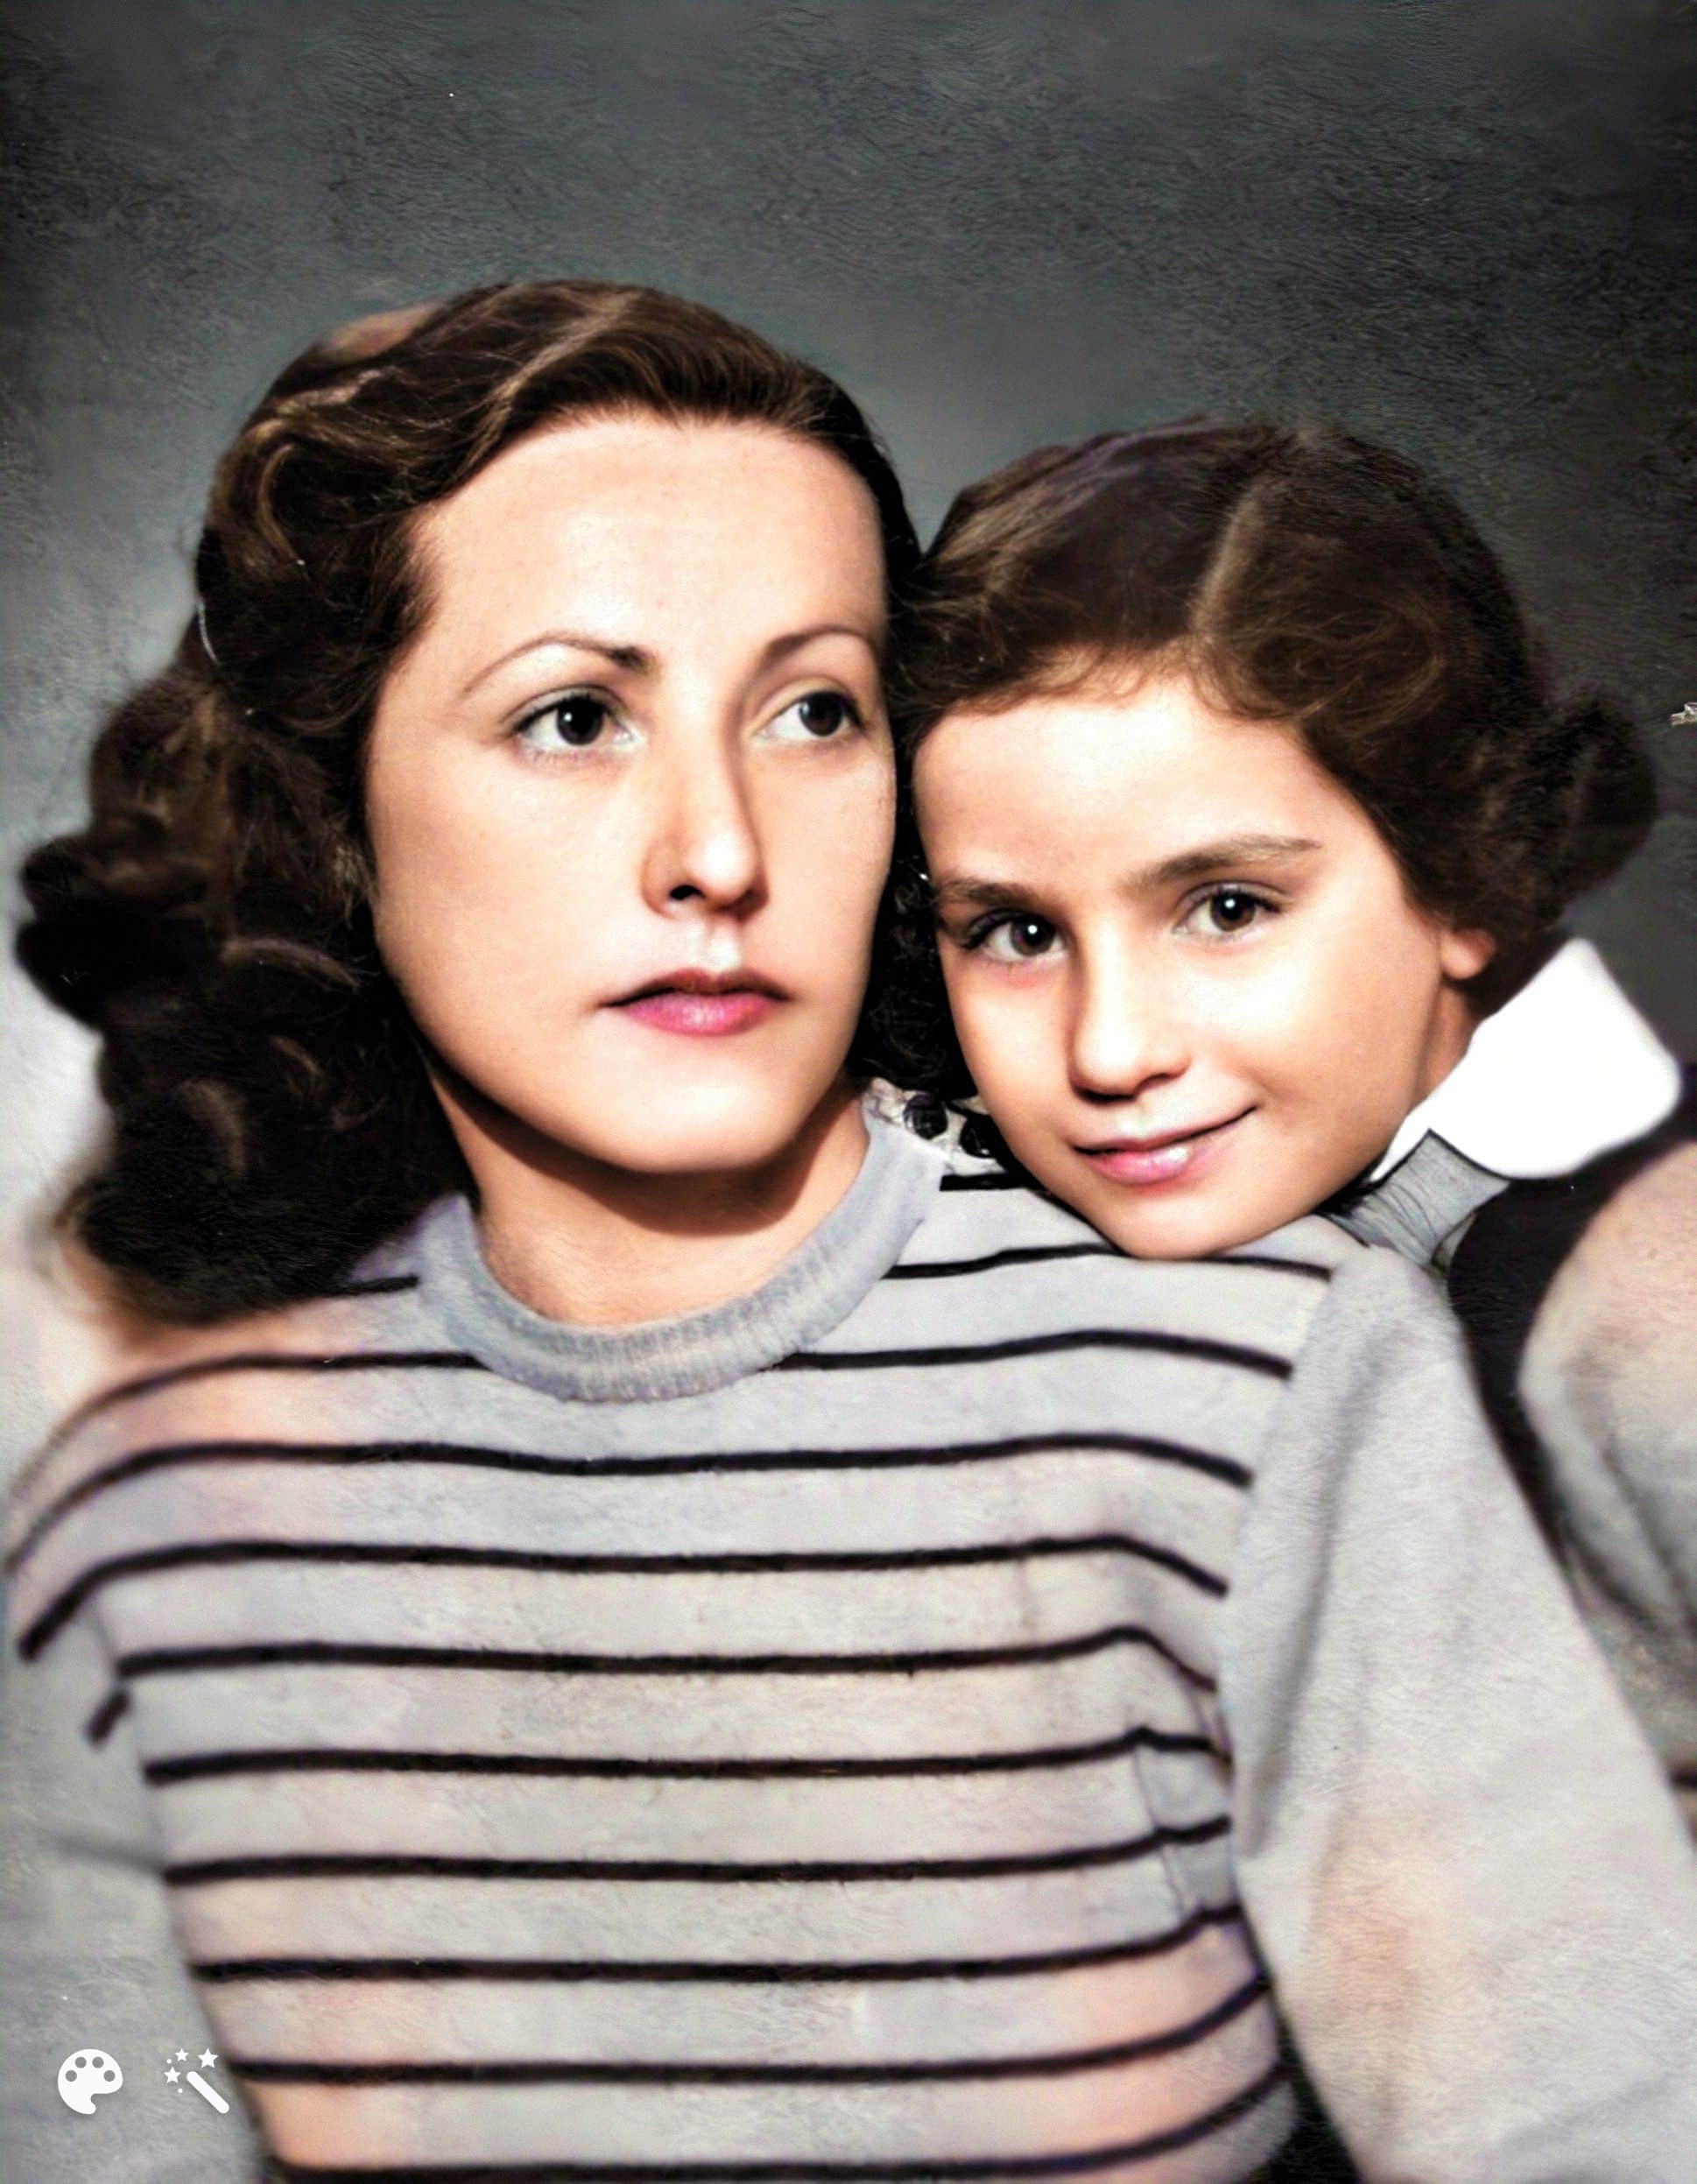 אדית ואליס אחרי המלחמה. התמונה שופרה ונצבעה באמצעות MyHeritage